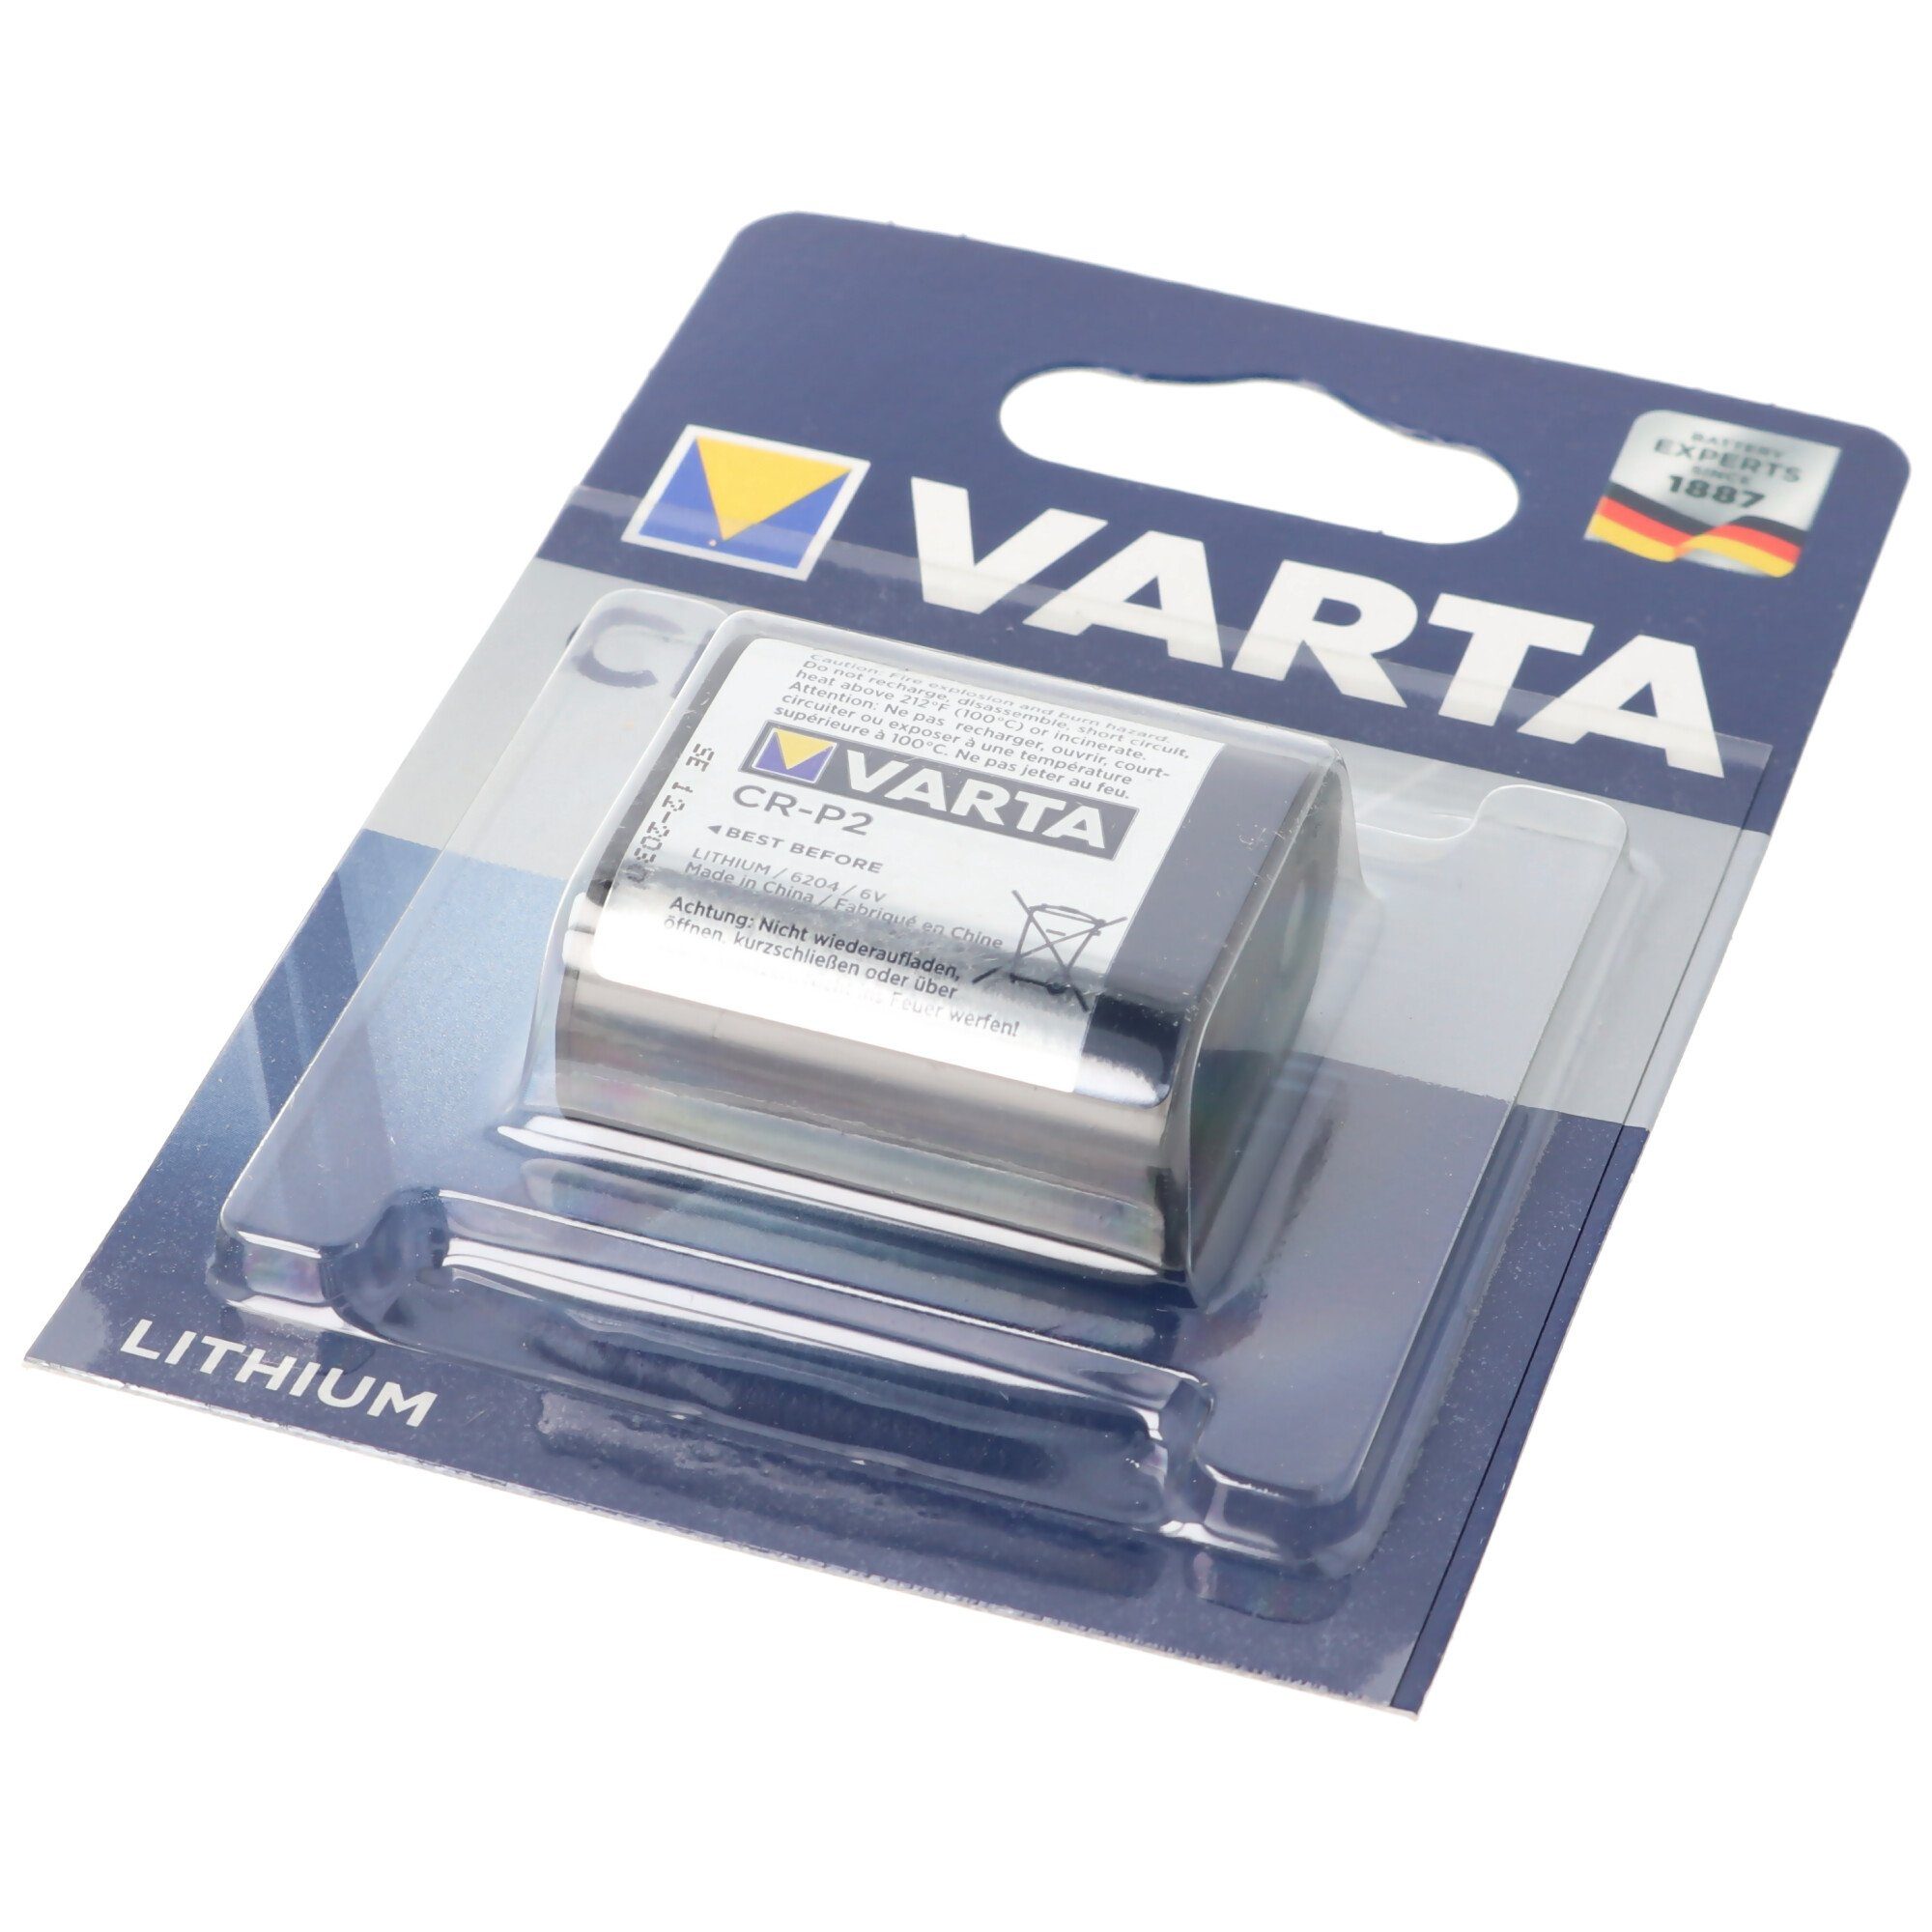 VARTA Batterie passend für Keramag 6V 577230, 5 Batterietyp Batterie Lithium Geberit